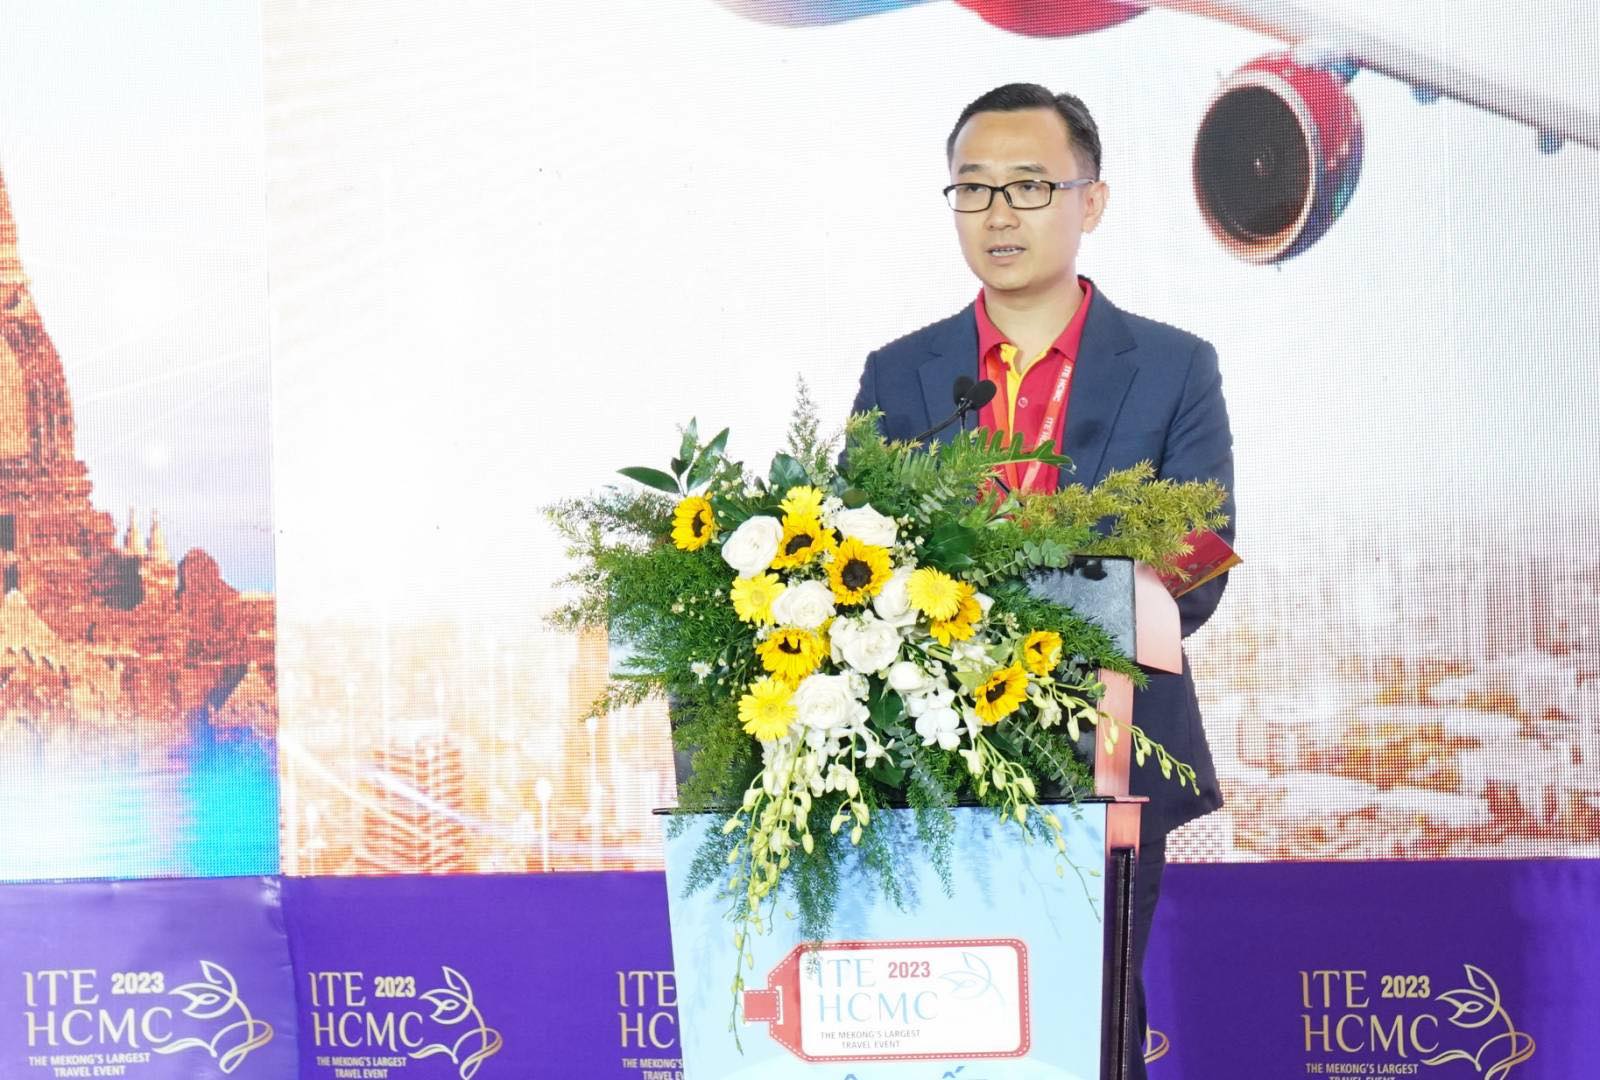 Phó Giám đốc Thương mại Vietjet Phạm Hùng Việt chia sẻ với diễn đàn các hoạt động chuyển đổi số đang diễn ra với mong muốn mang tới cho khách hàng những trải nghiệm tốt nhất.